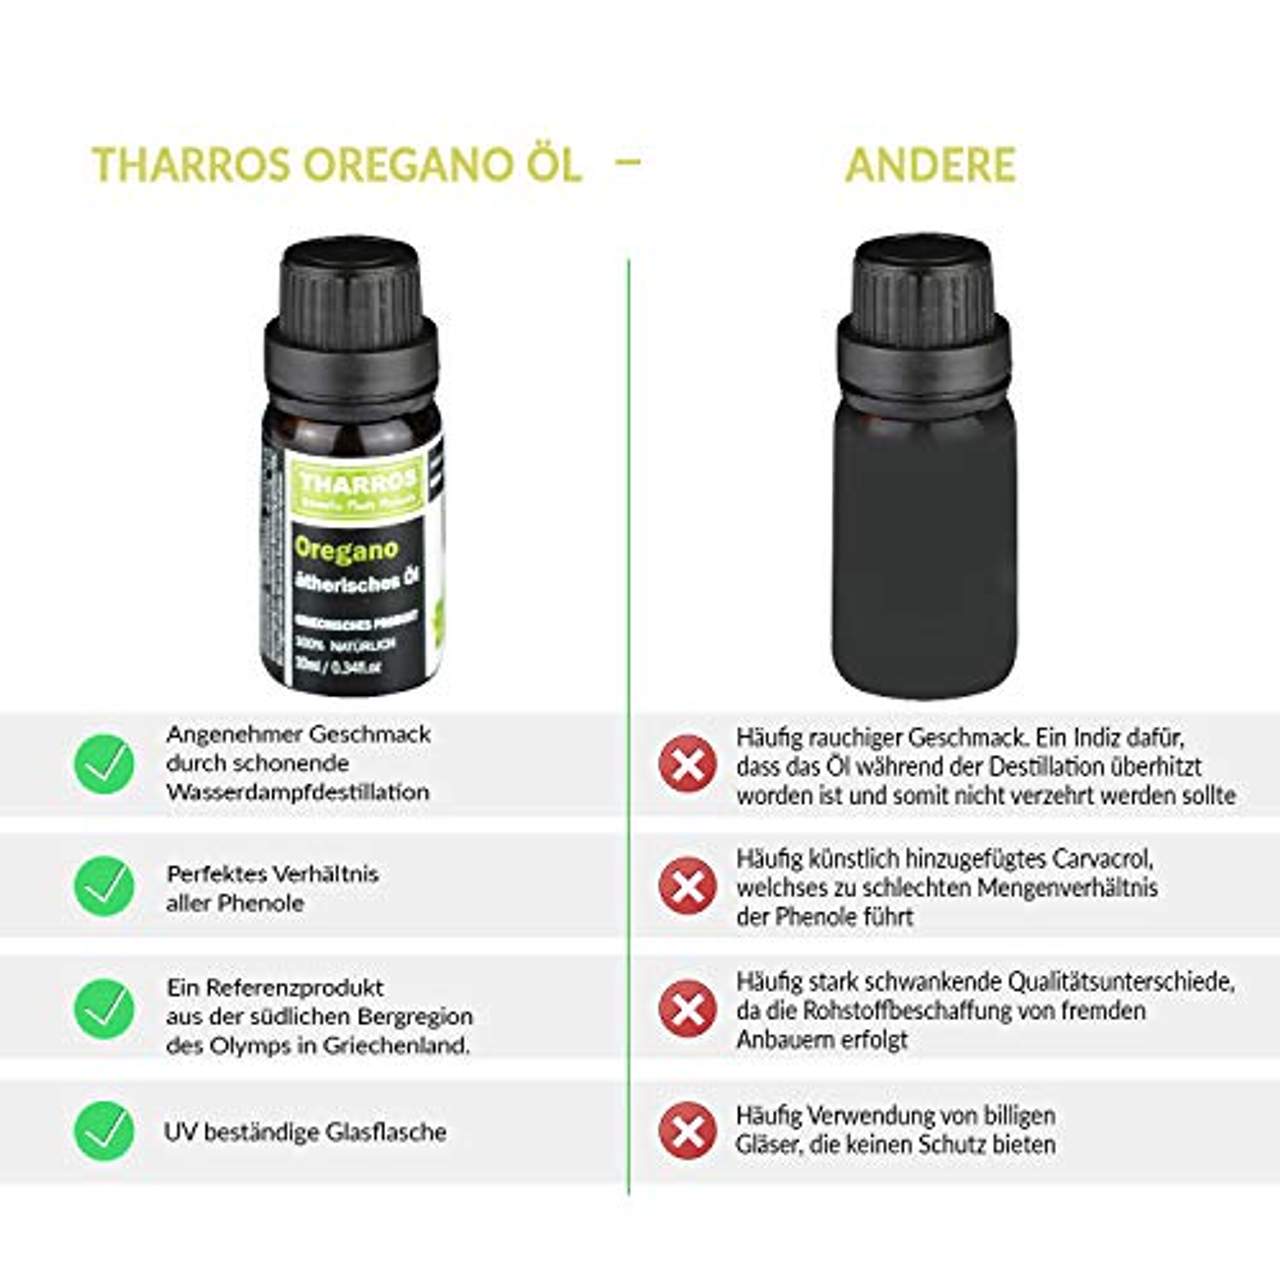 Tharros Oregano Öl zum Einnehmen